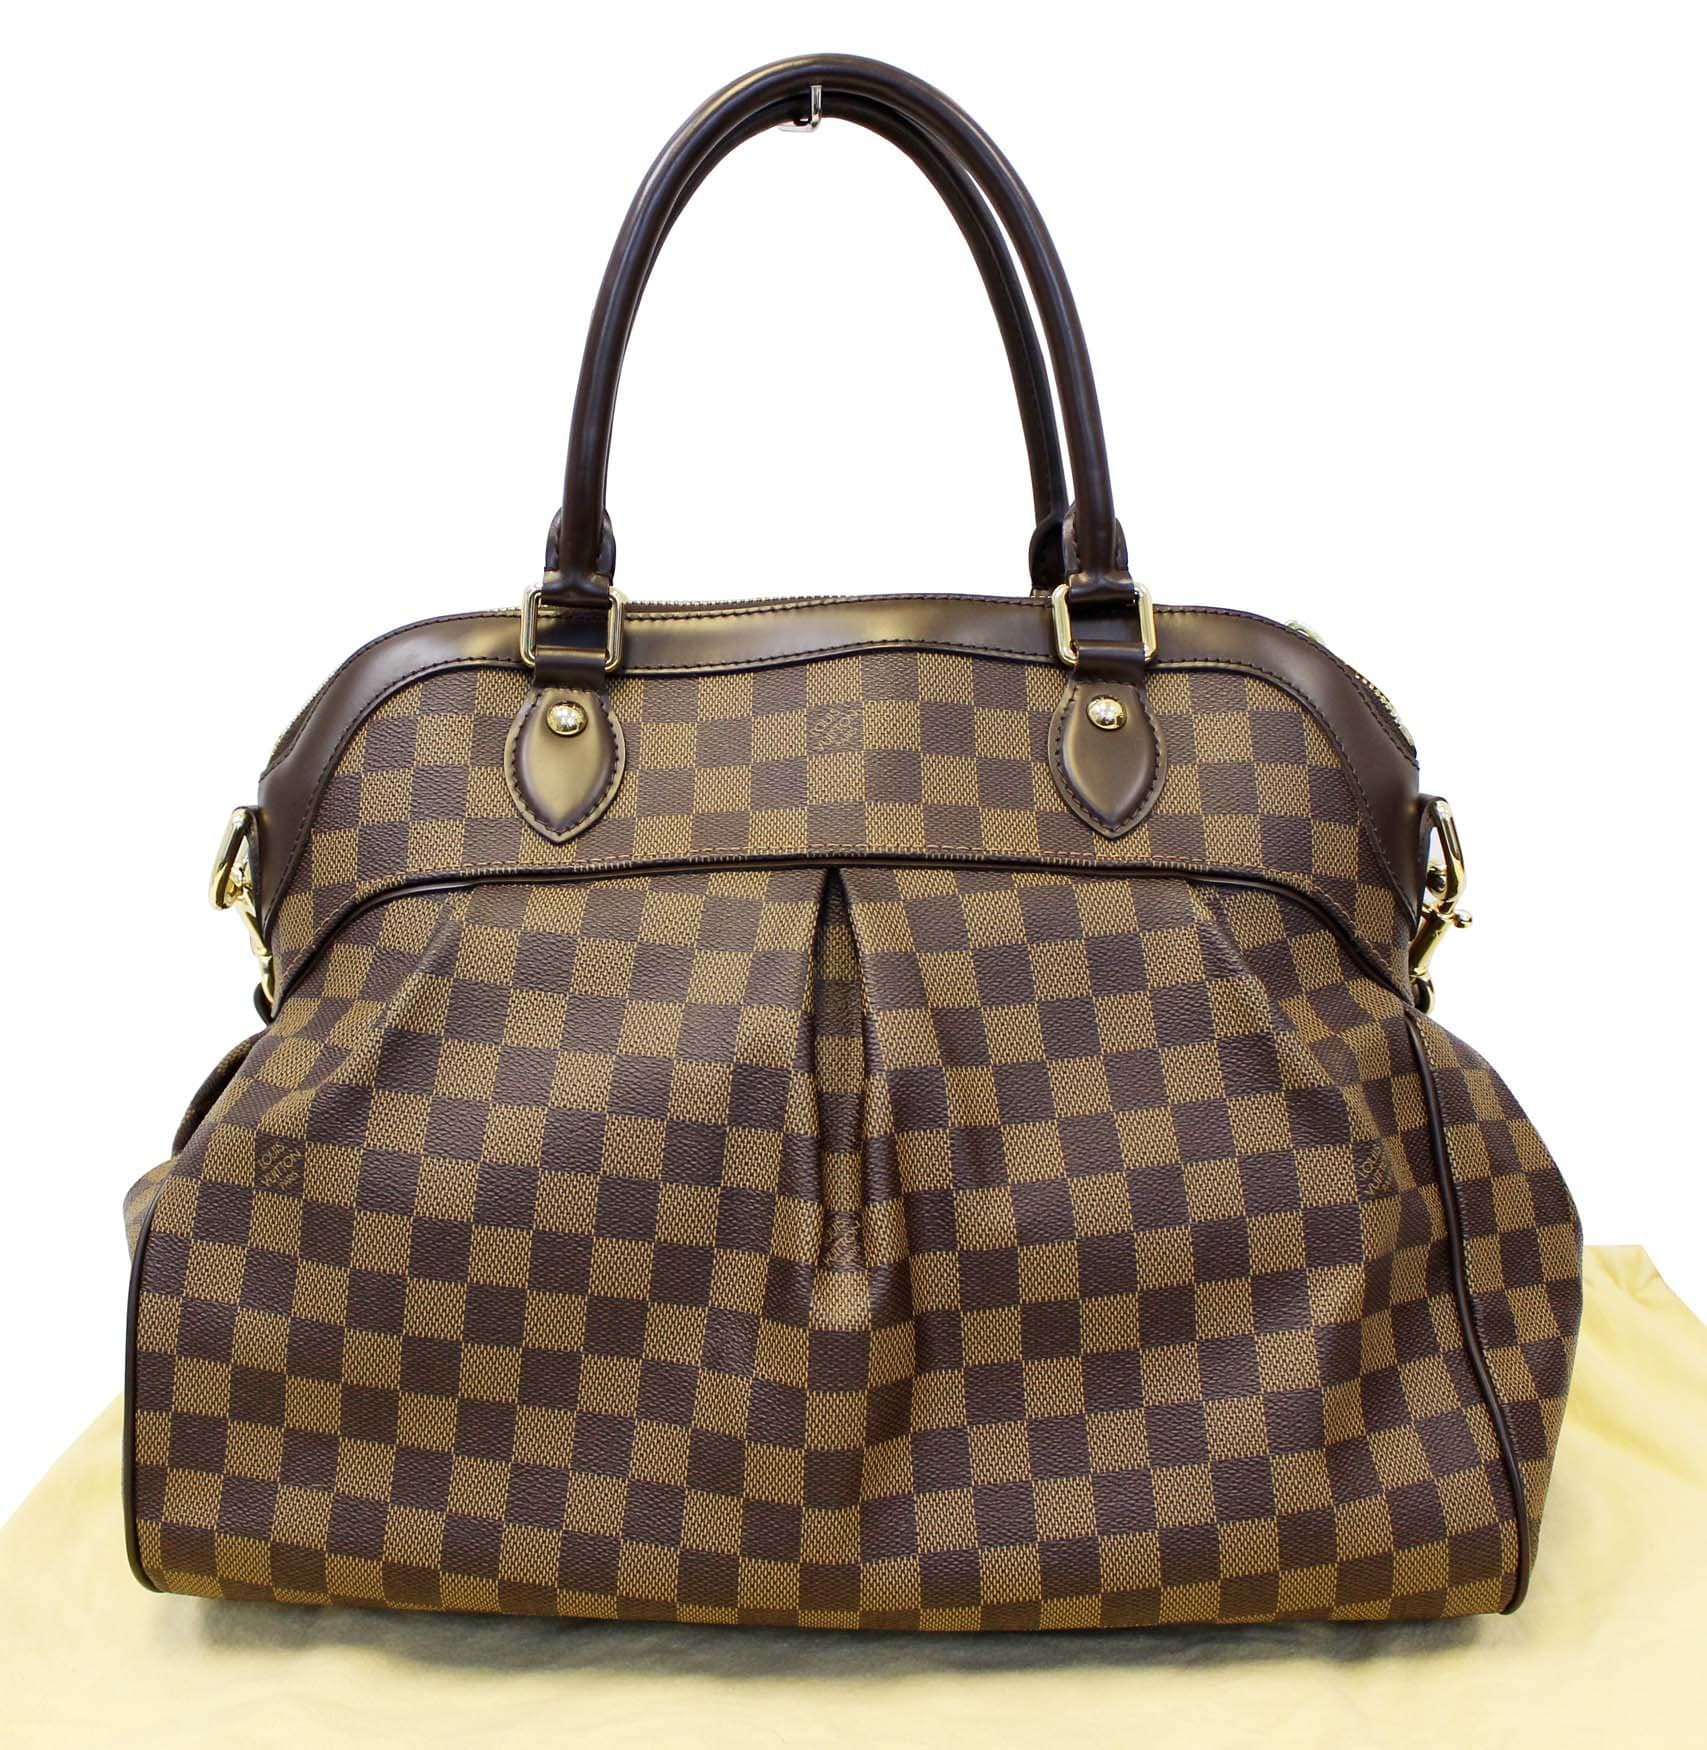 Gorgeous 100% Authentic Louis vuitton Damier Trevi GM Handbag